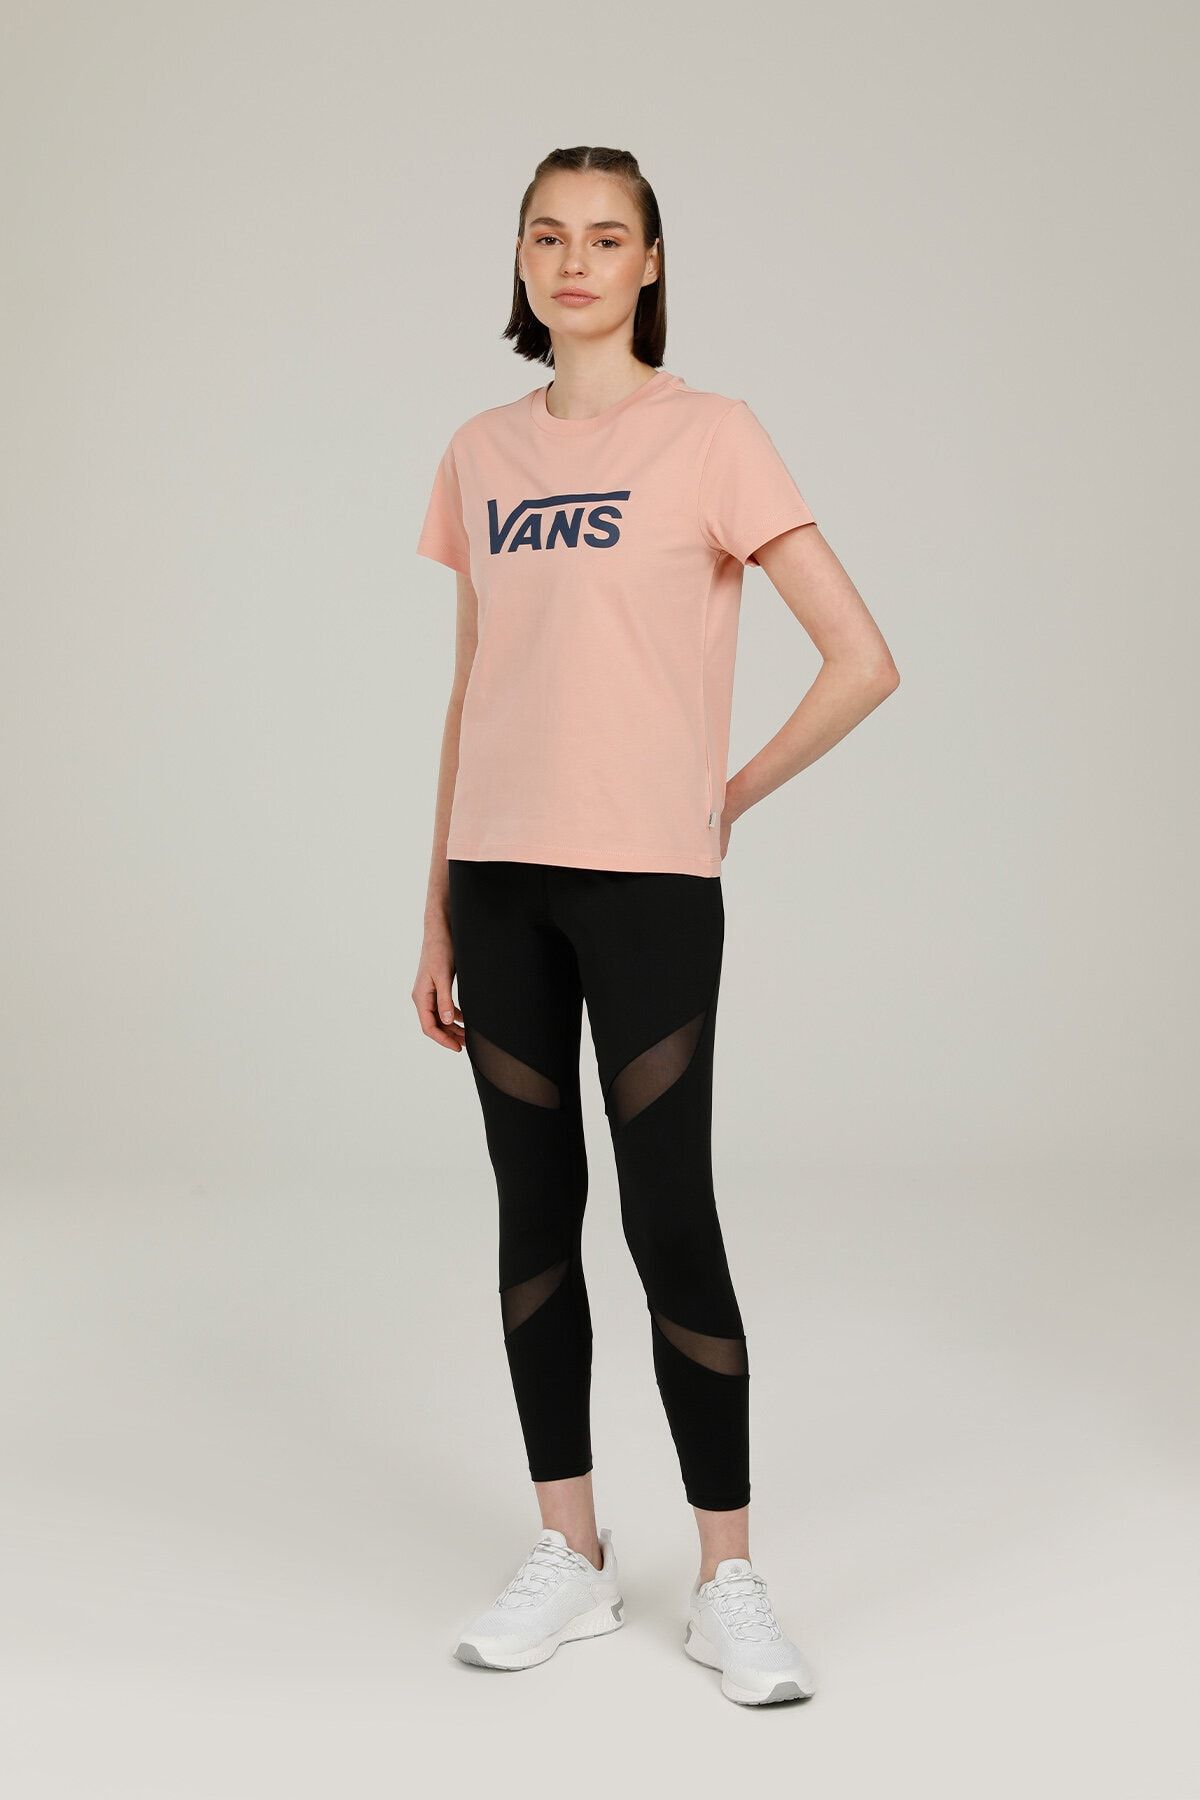 تی شرت یقه خدمه طرح چاپی مدل ساده آستین کوتاه زنانه ونس Vans (برند آمریکا)